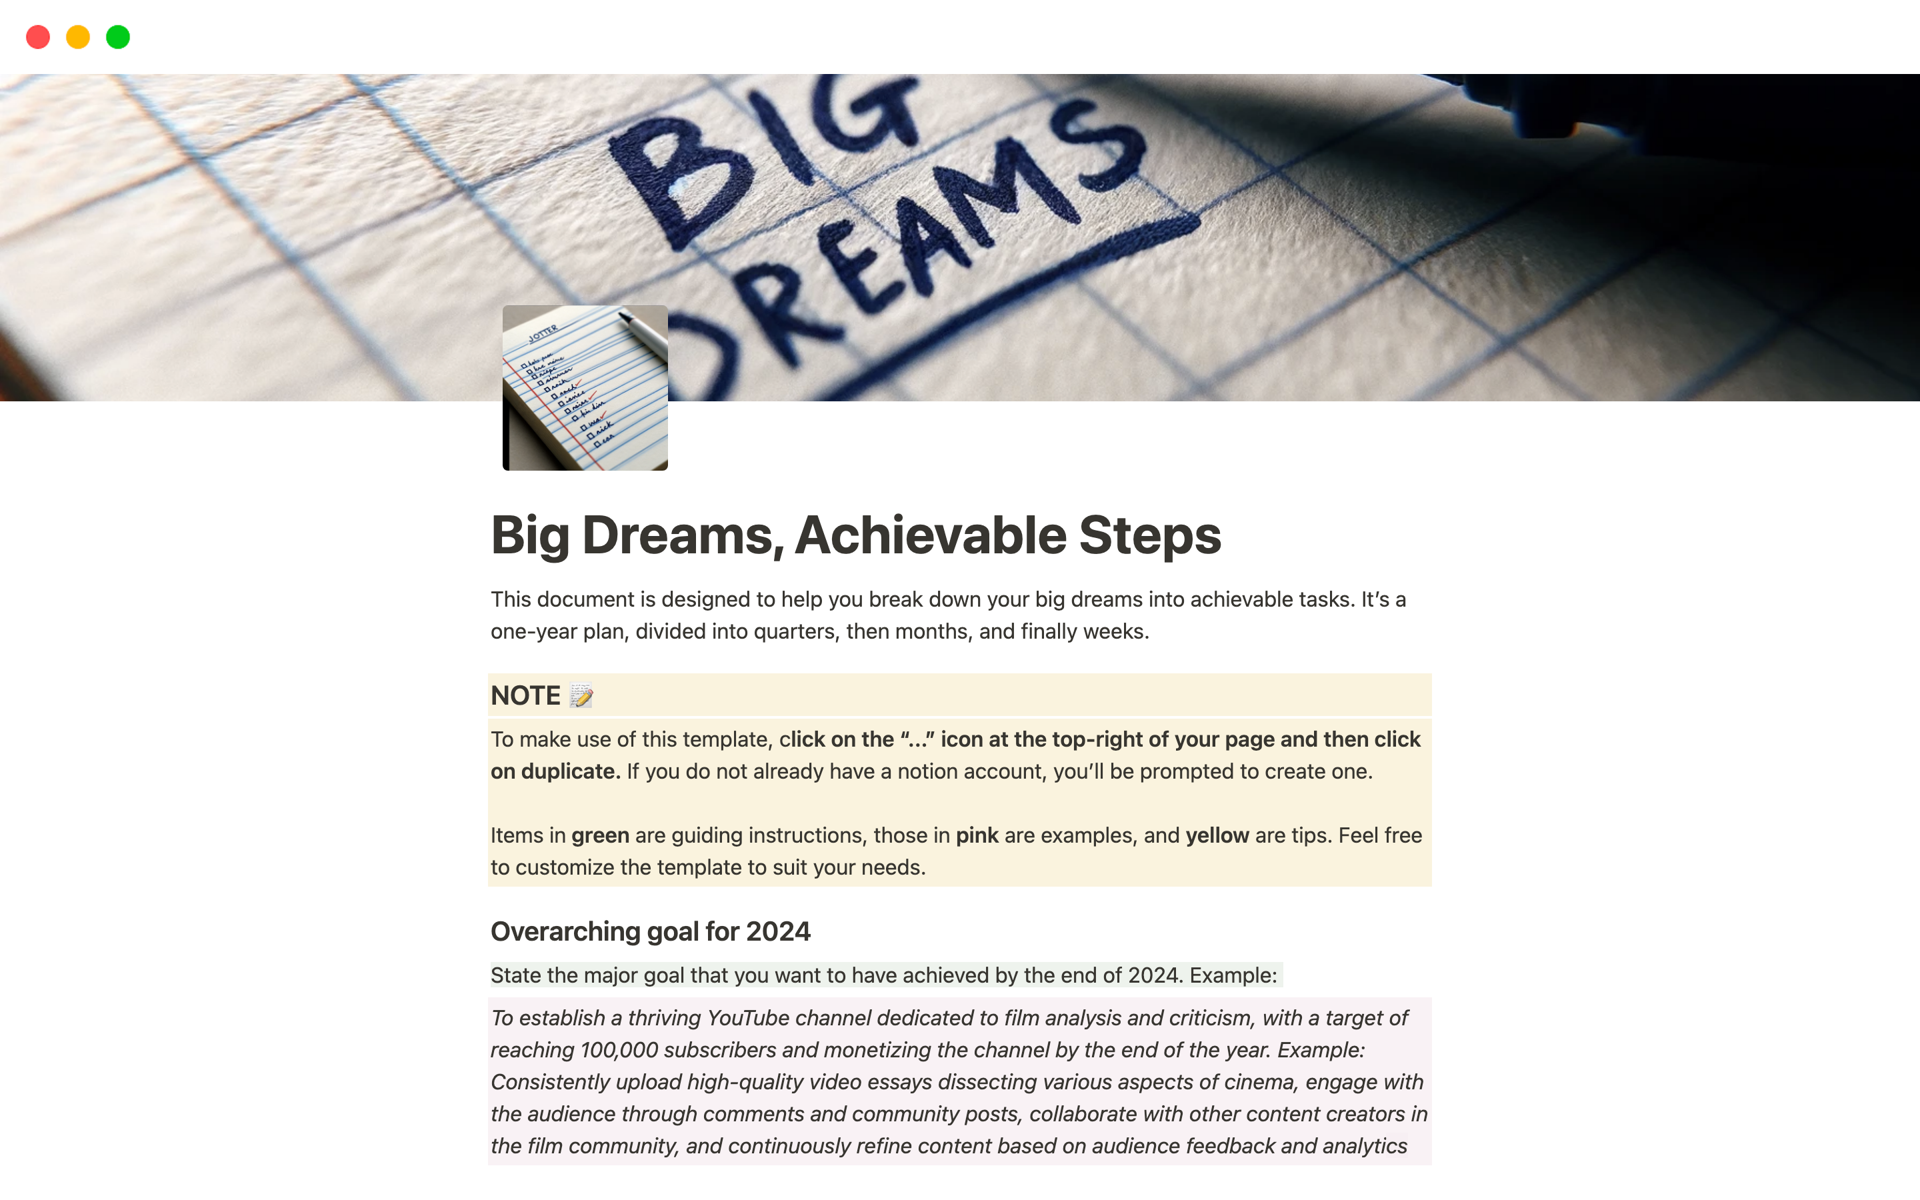 Aperçu du modèle de Big Dreams, Achievable Steps